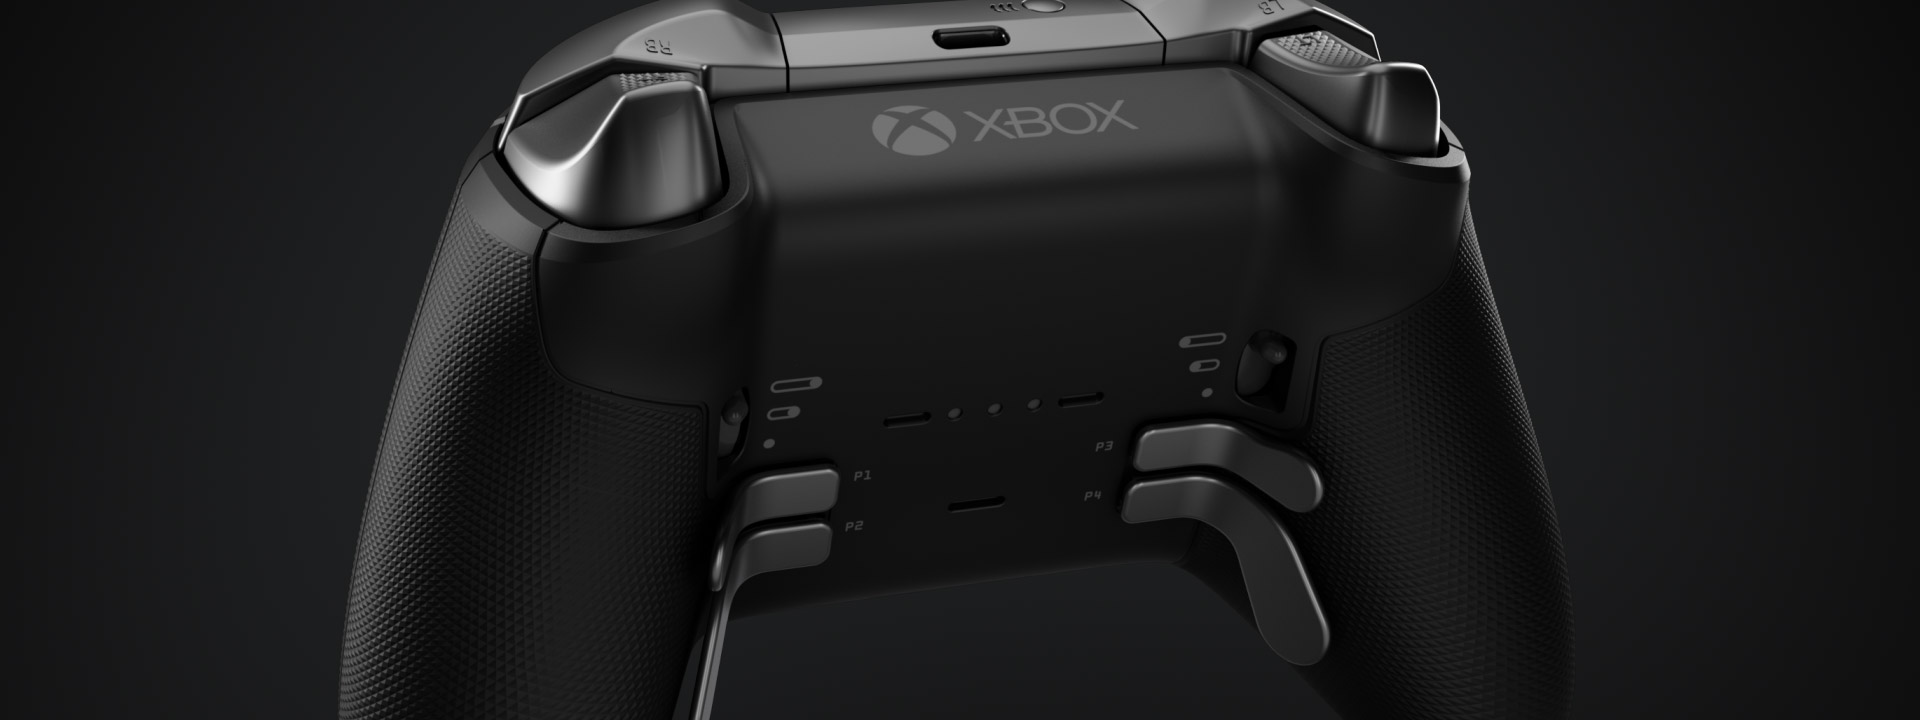 Xbox One Elite Series 2: Liquid Spectrum - Pro Gaming Controllers